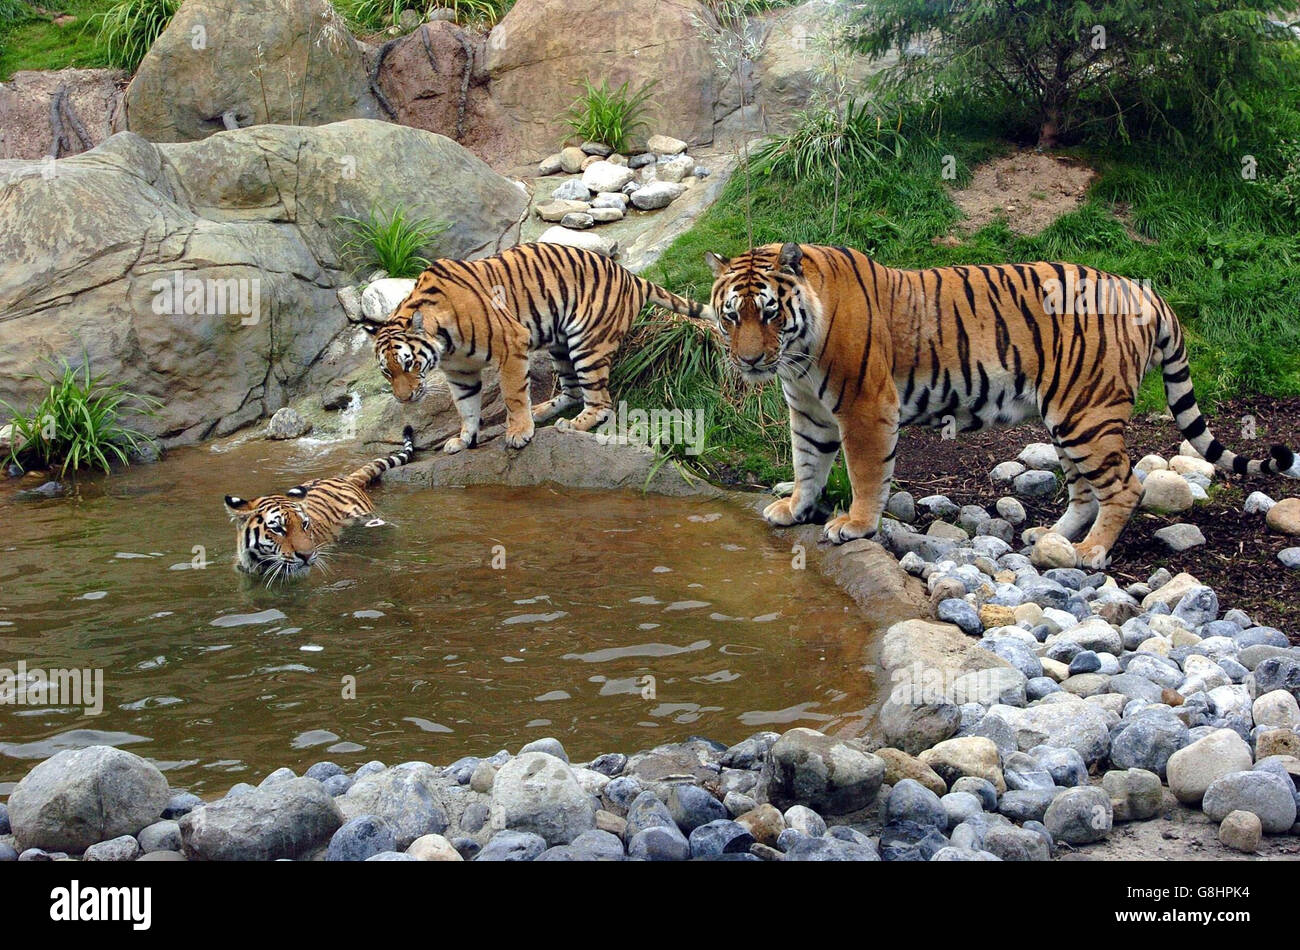 Die neue Amur-Tiger-Ausstellung, zu der zwei junge Amur-Tiger gehören, Shilka und Zeya, Schwestern, die im März 2003 im Edinburgh Zoo geboren wurden, und Turlough, der männliche Amur-Tiger im Dublin Zoo. Die hochmoderne Tigerausstellung ähnelt dem Kaltklima-Wald Sibiriens, der der natürliche Lebensraum des Amur-Tigers ist. Die wilde Population des Amur-Tigers wird angenommen, dass sie irgendwo unter 400 liegt und durch Zerstörung des Lebensraums und Wilderei gefährdet ist. Stockfoto